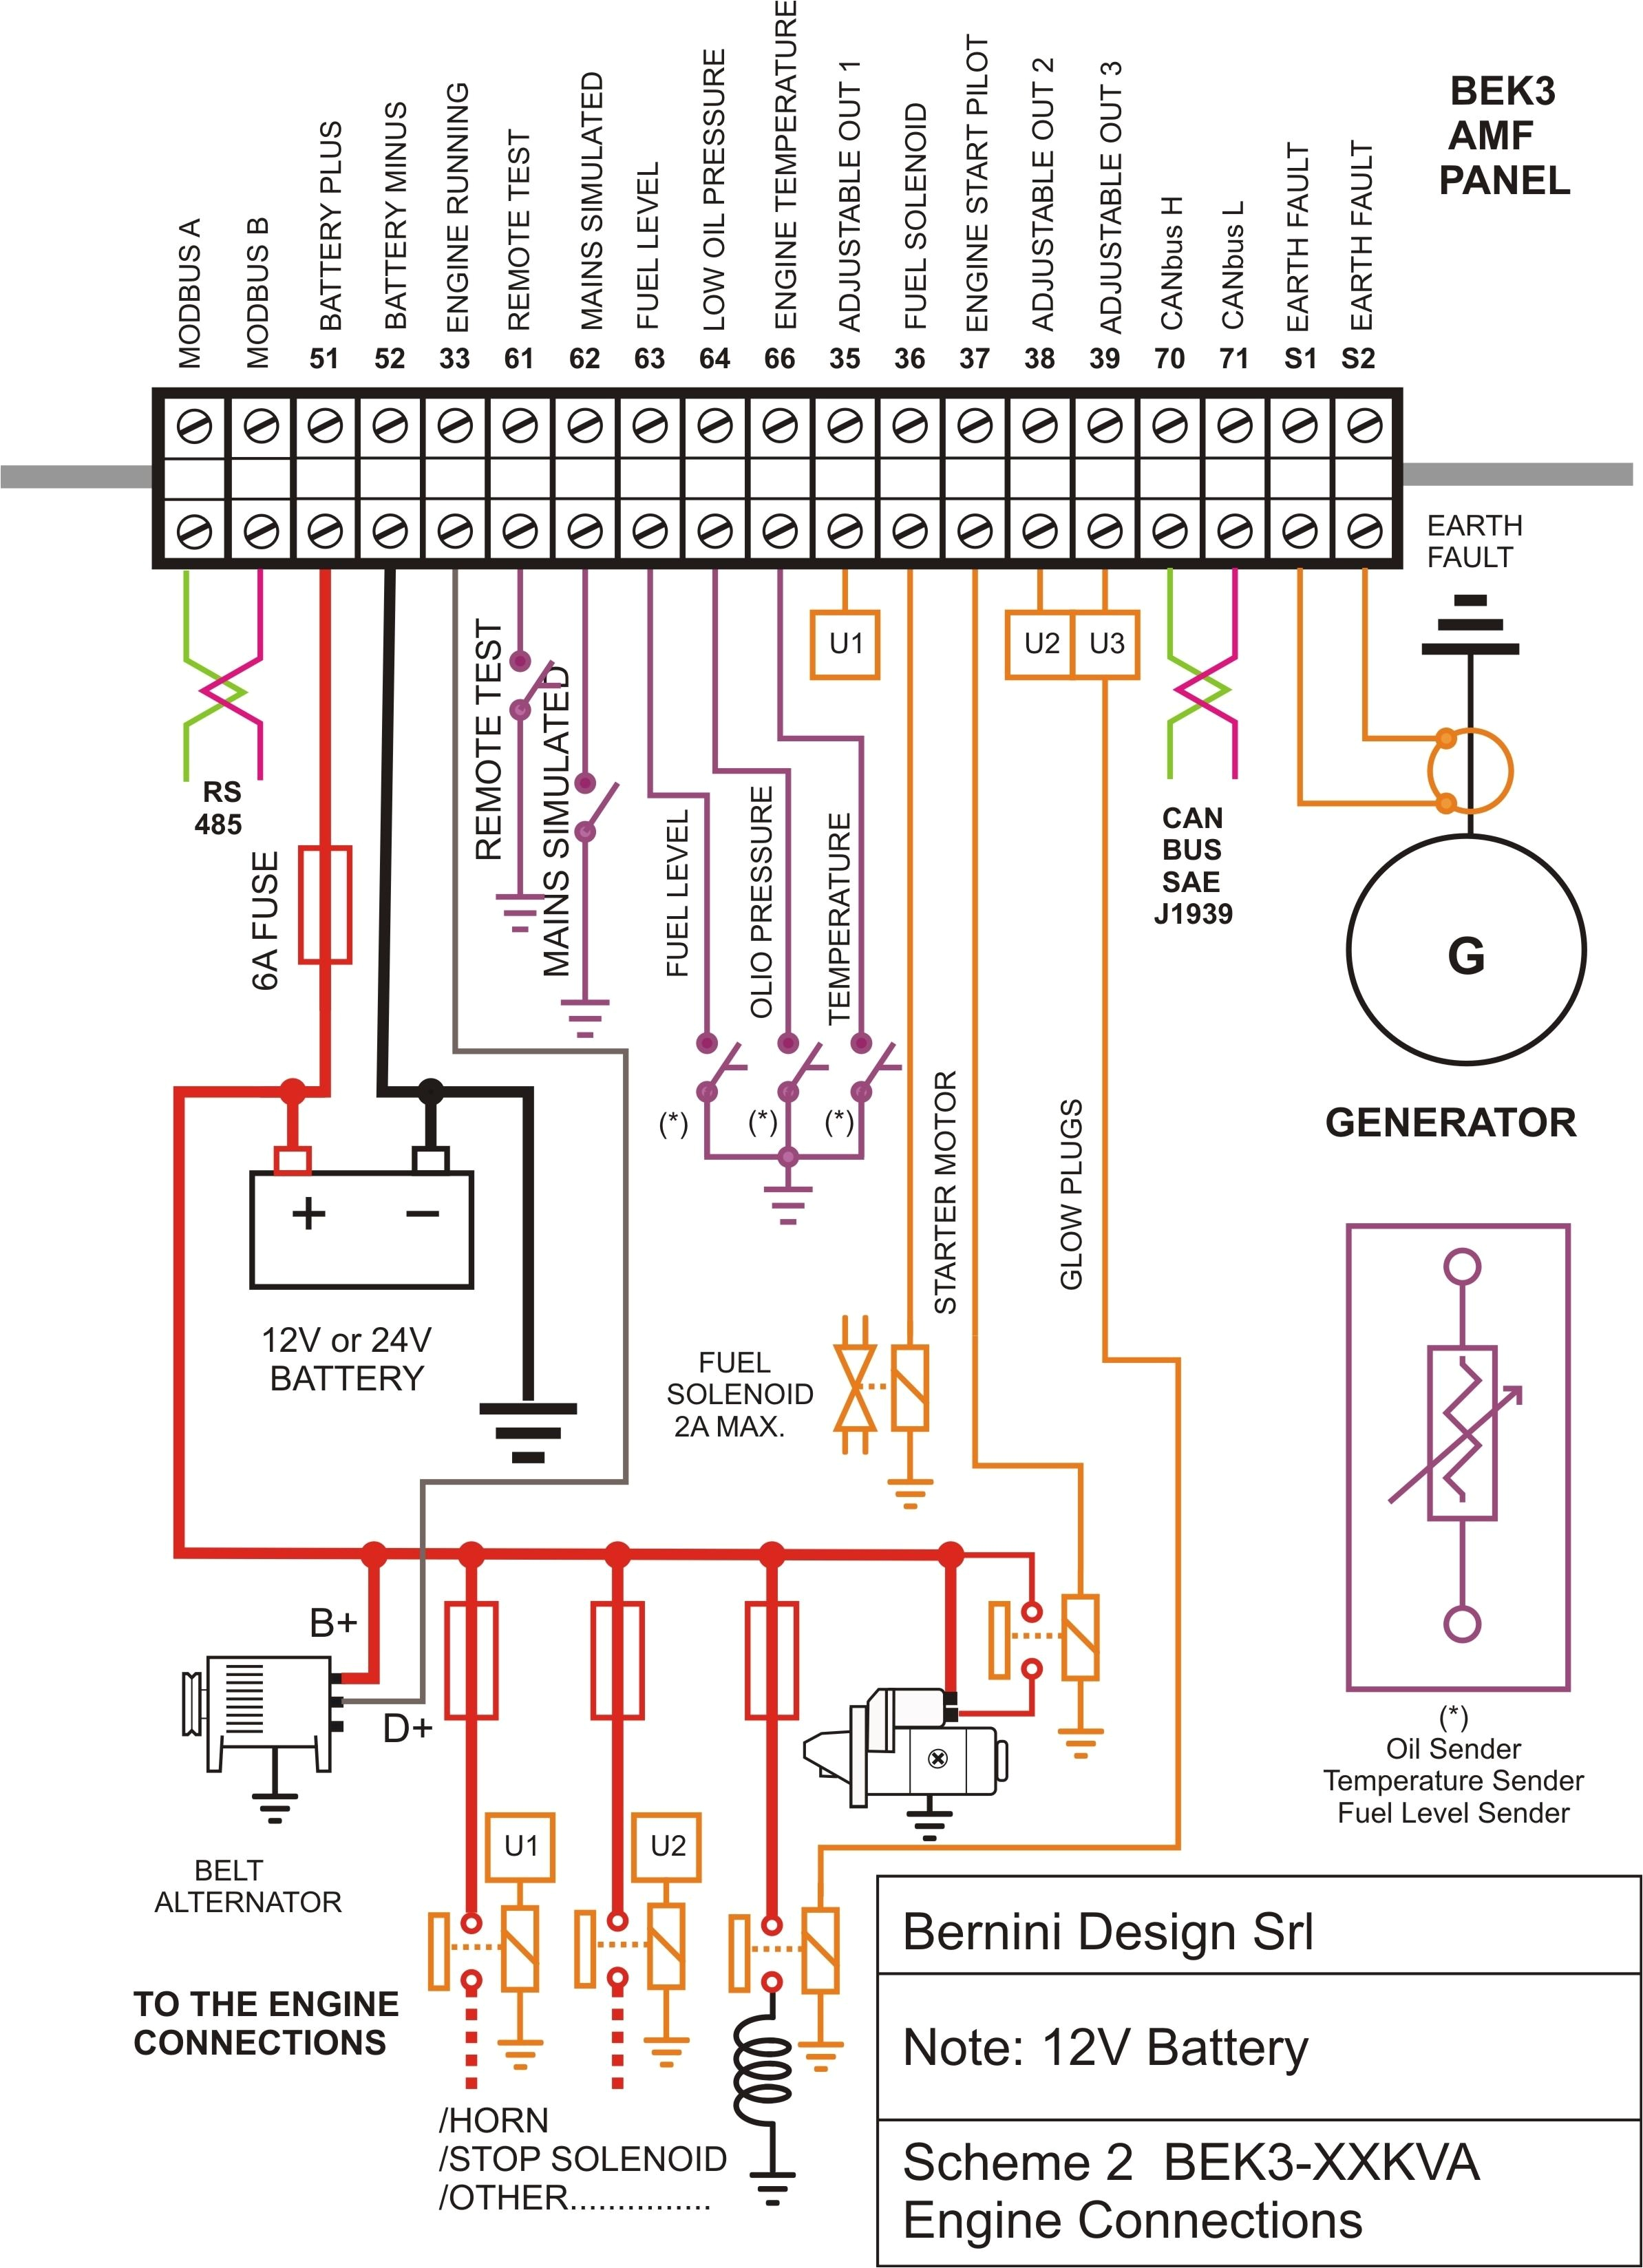 basic electrical wiring diagram pdf wiringdiagram org solar panel wiring diagram pdf panel wiring diagram pdf